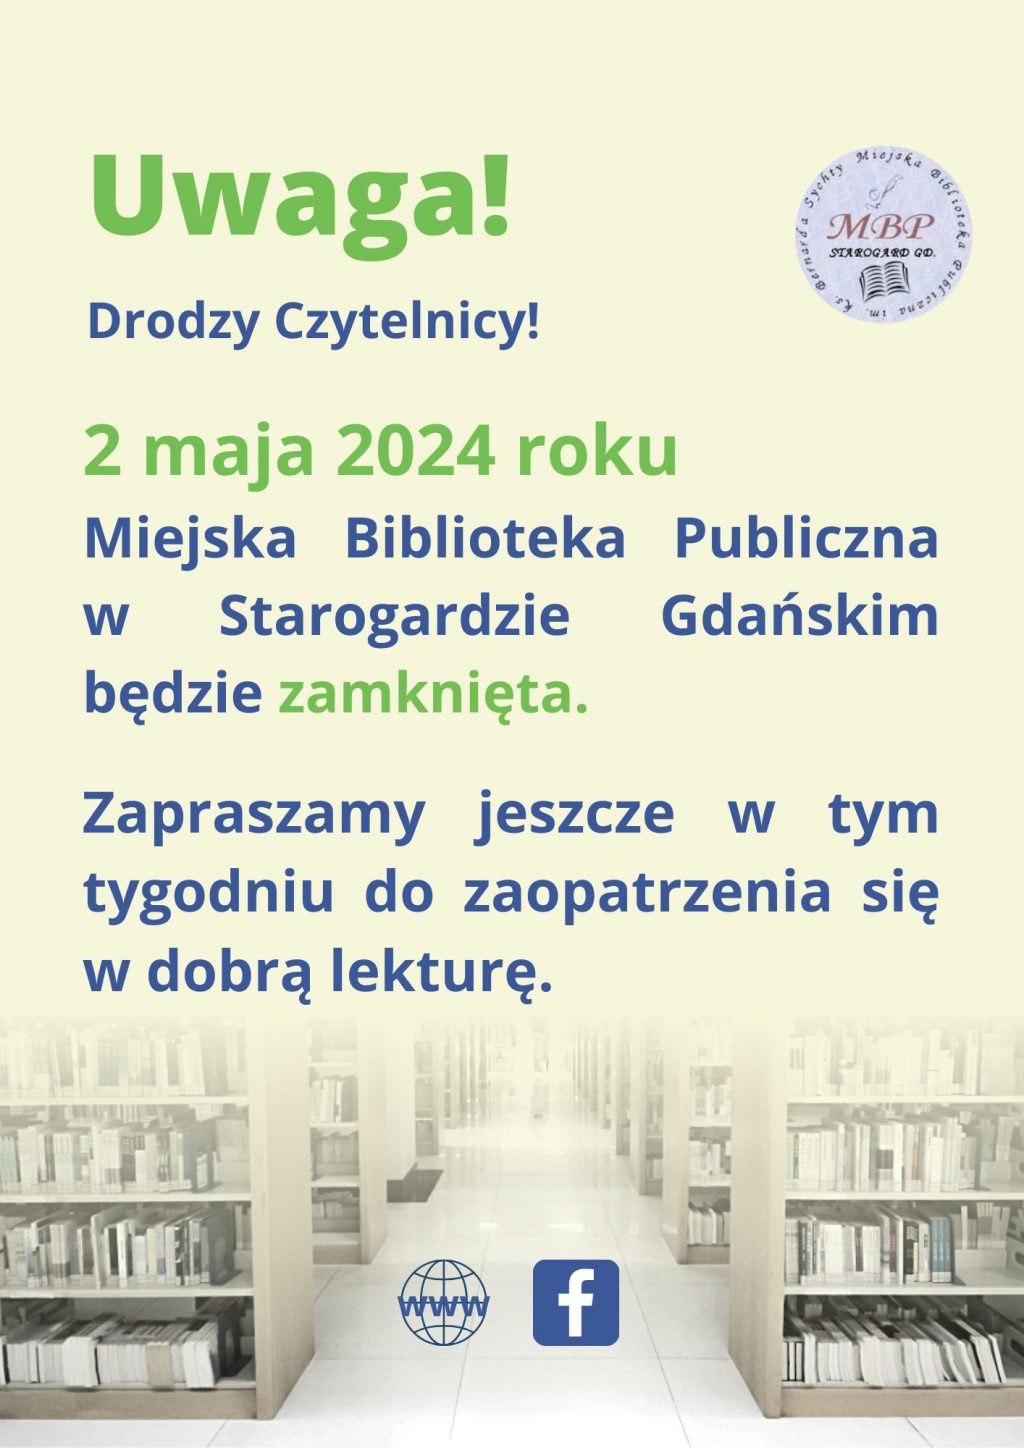 2 maja 2024 roku Miejska Biblioteka Publiczna w Starogardzie Gdańskim będzie zamknięta. Zapraszamy jeszcze w tym tygodniu do zaopatrzenia się w dobrą lekturę.